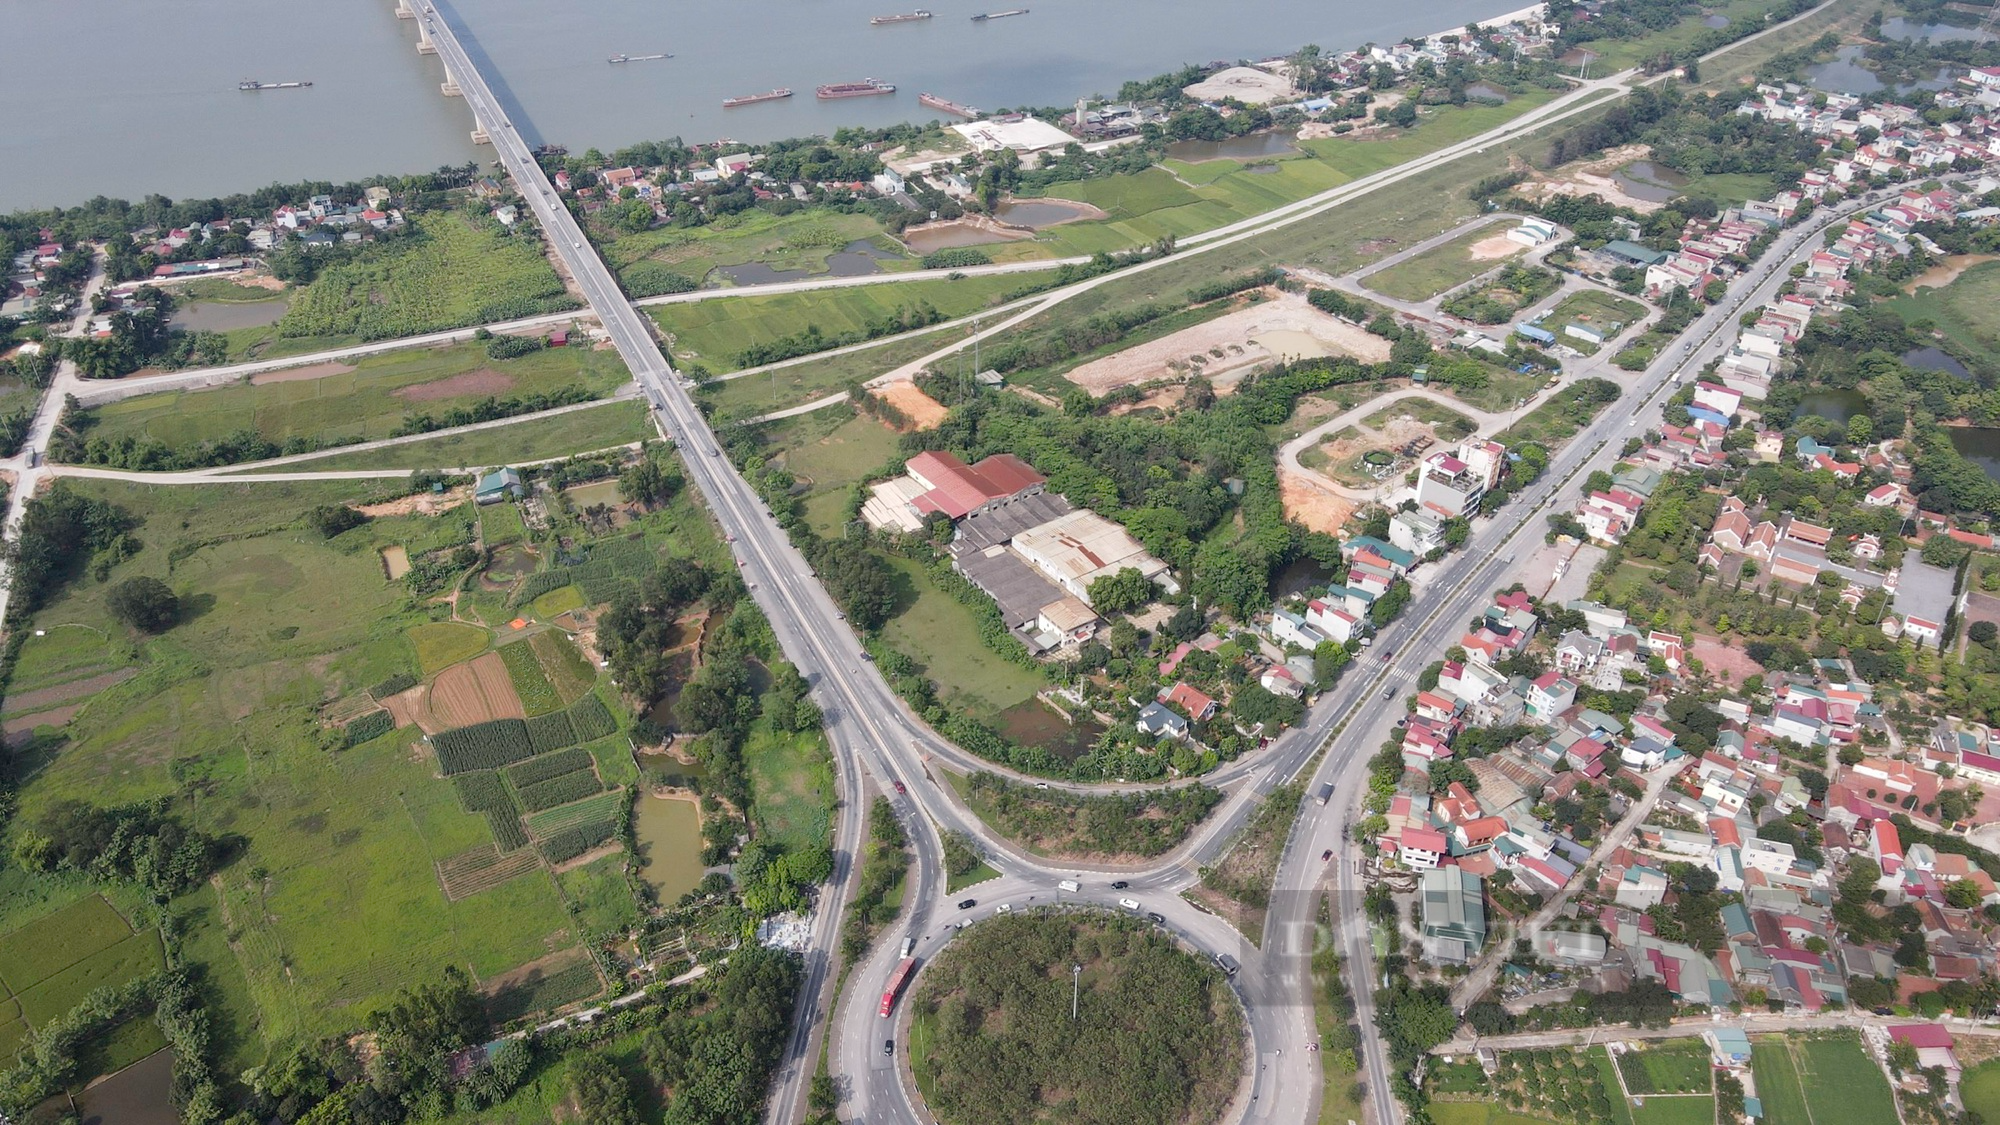 Cận cảnh cây cầu vượt sông dài nhất Việt Nam sau 9 năm vận hành khai thác - Ảnh 11.